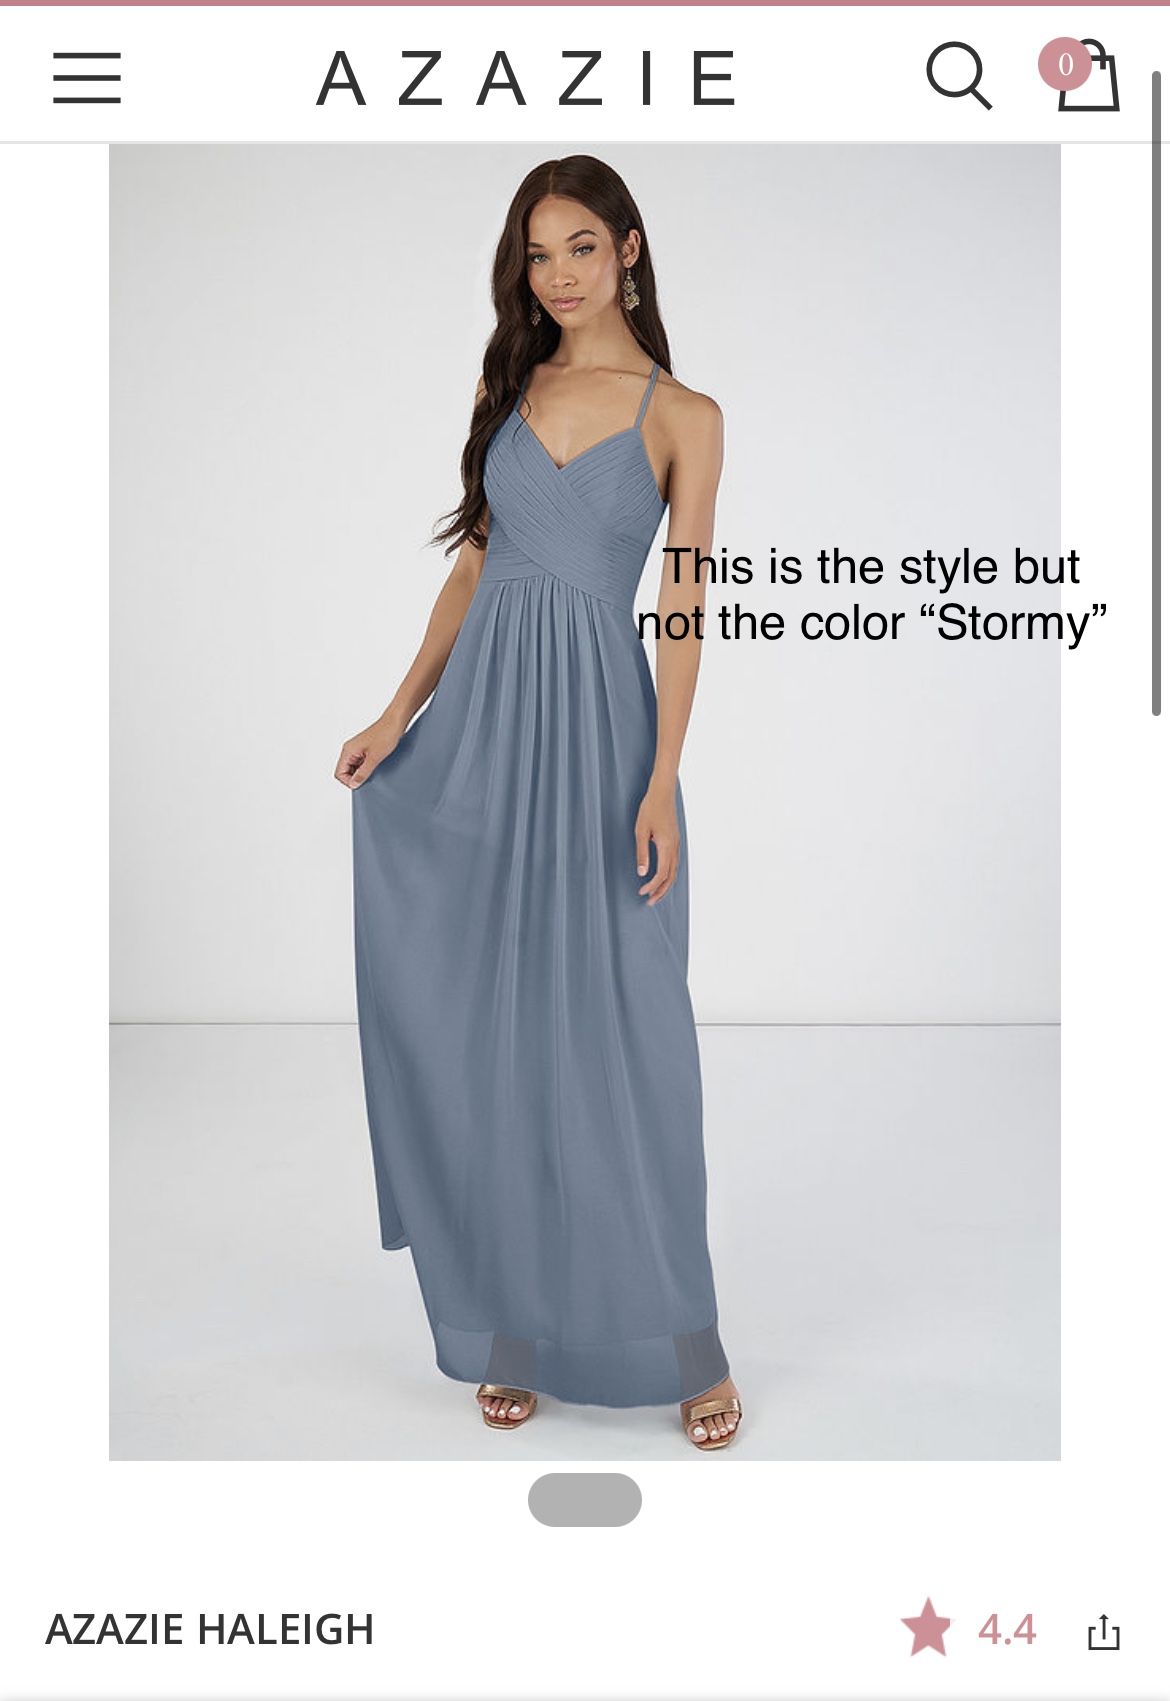 2 Azazie Dresses- Same Color